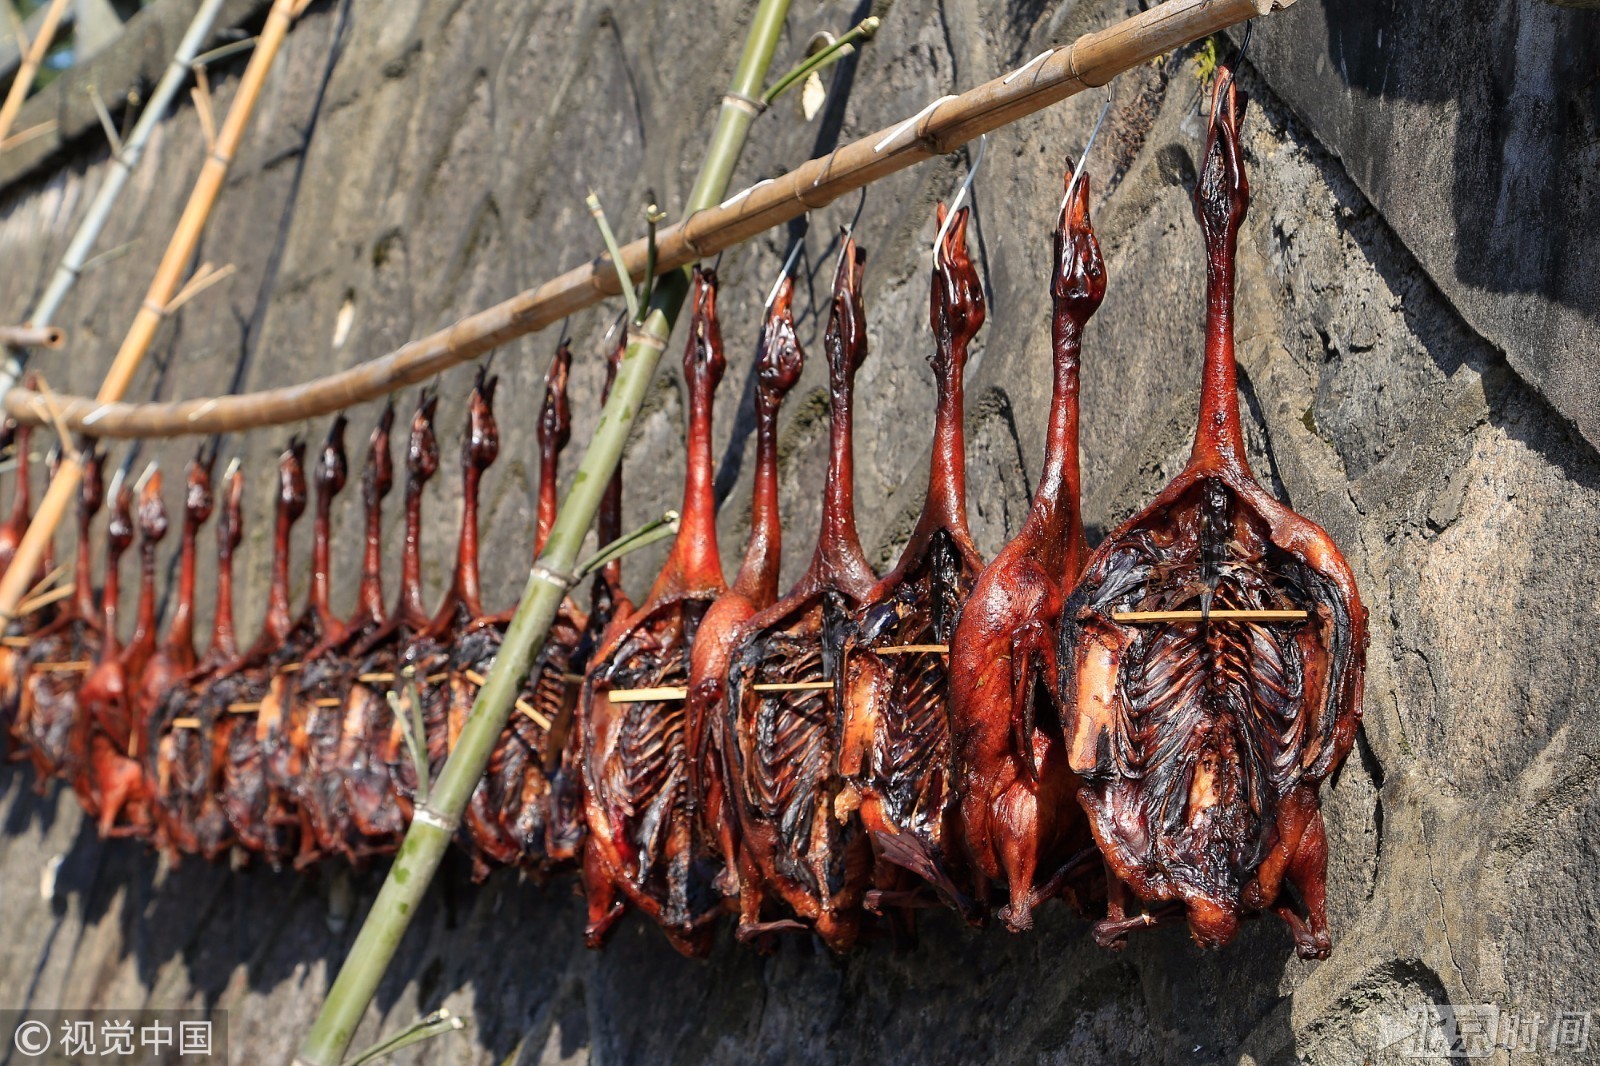 近日,浙江杭州梅家坞村的村民们开始在自家的门前屋后晾晒酱鸭,酱肉等